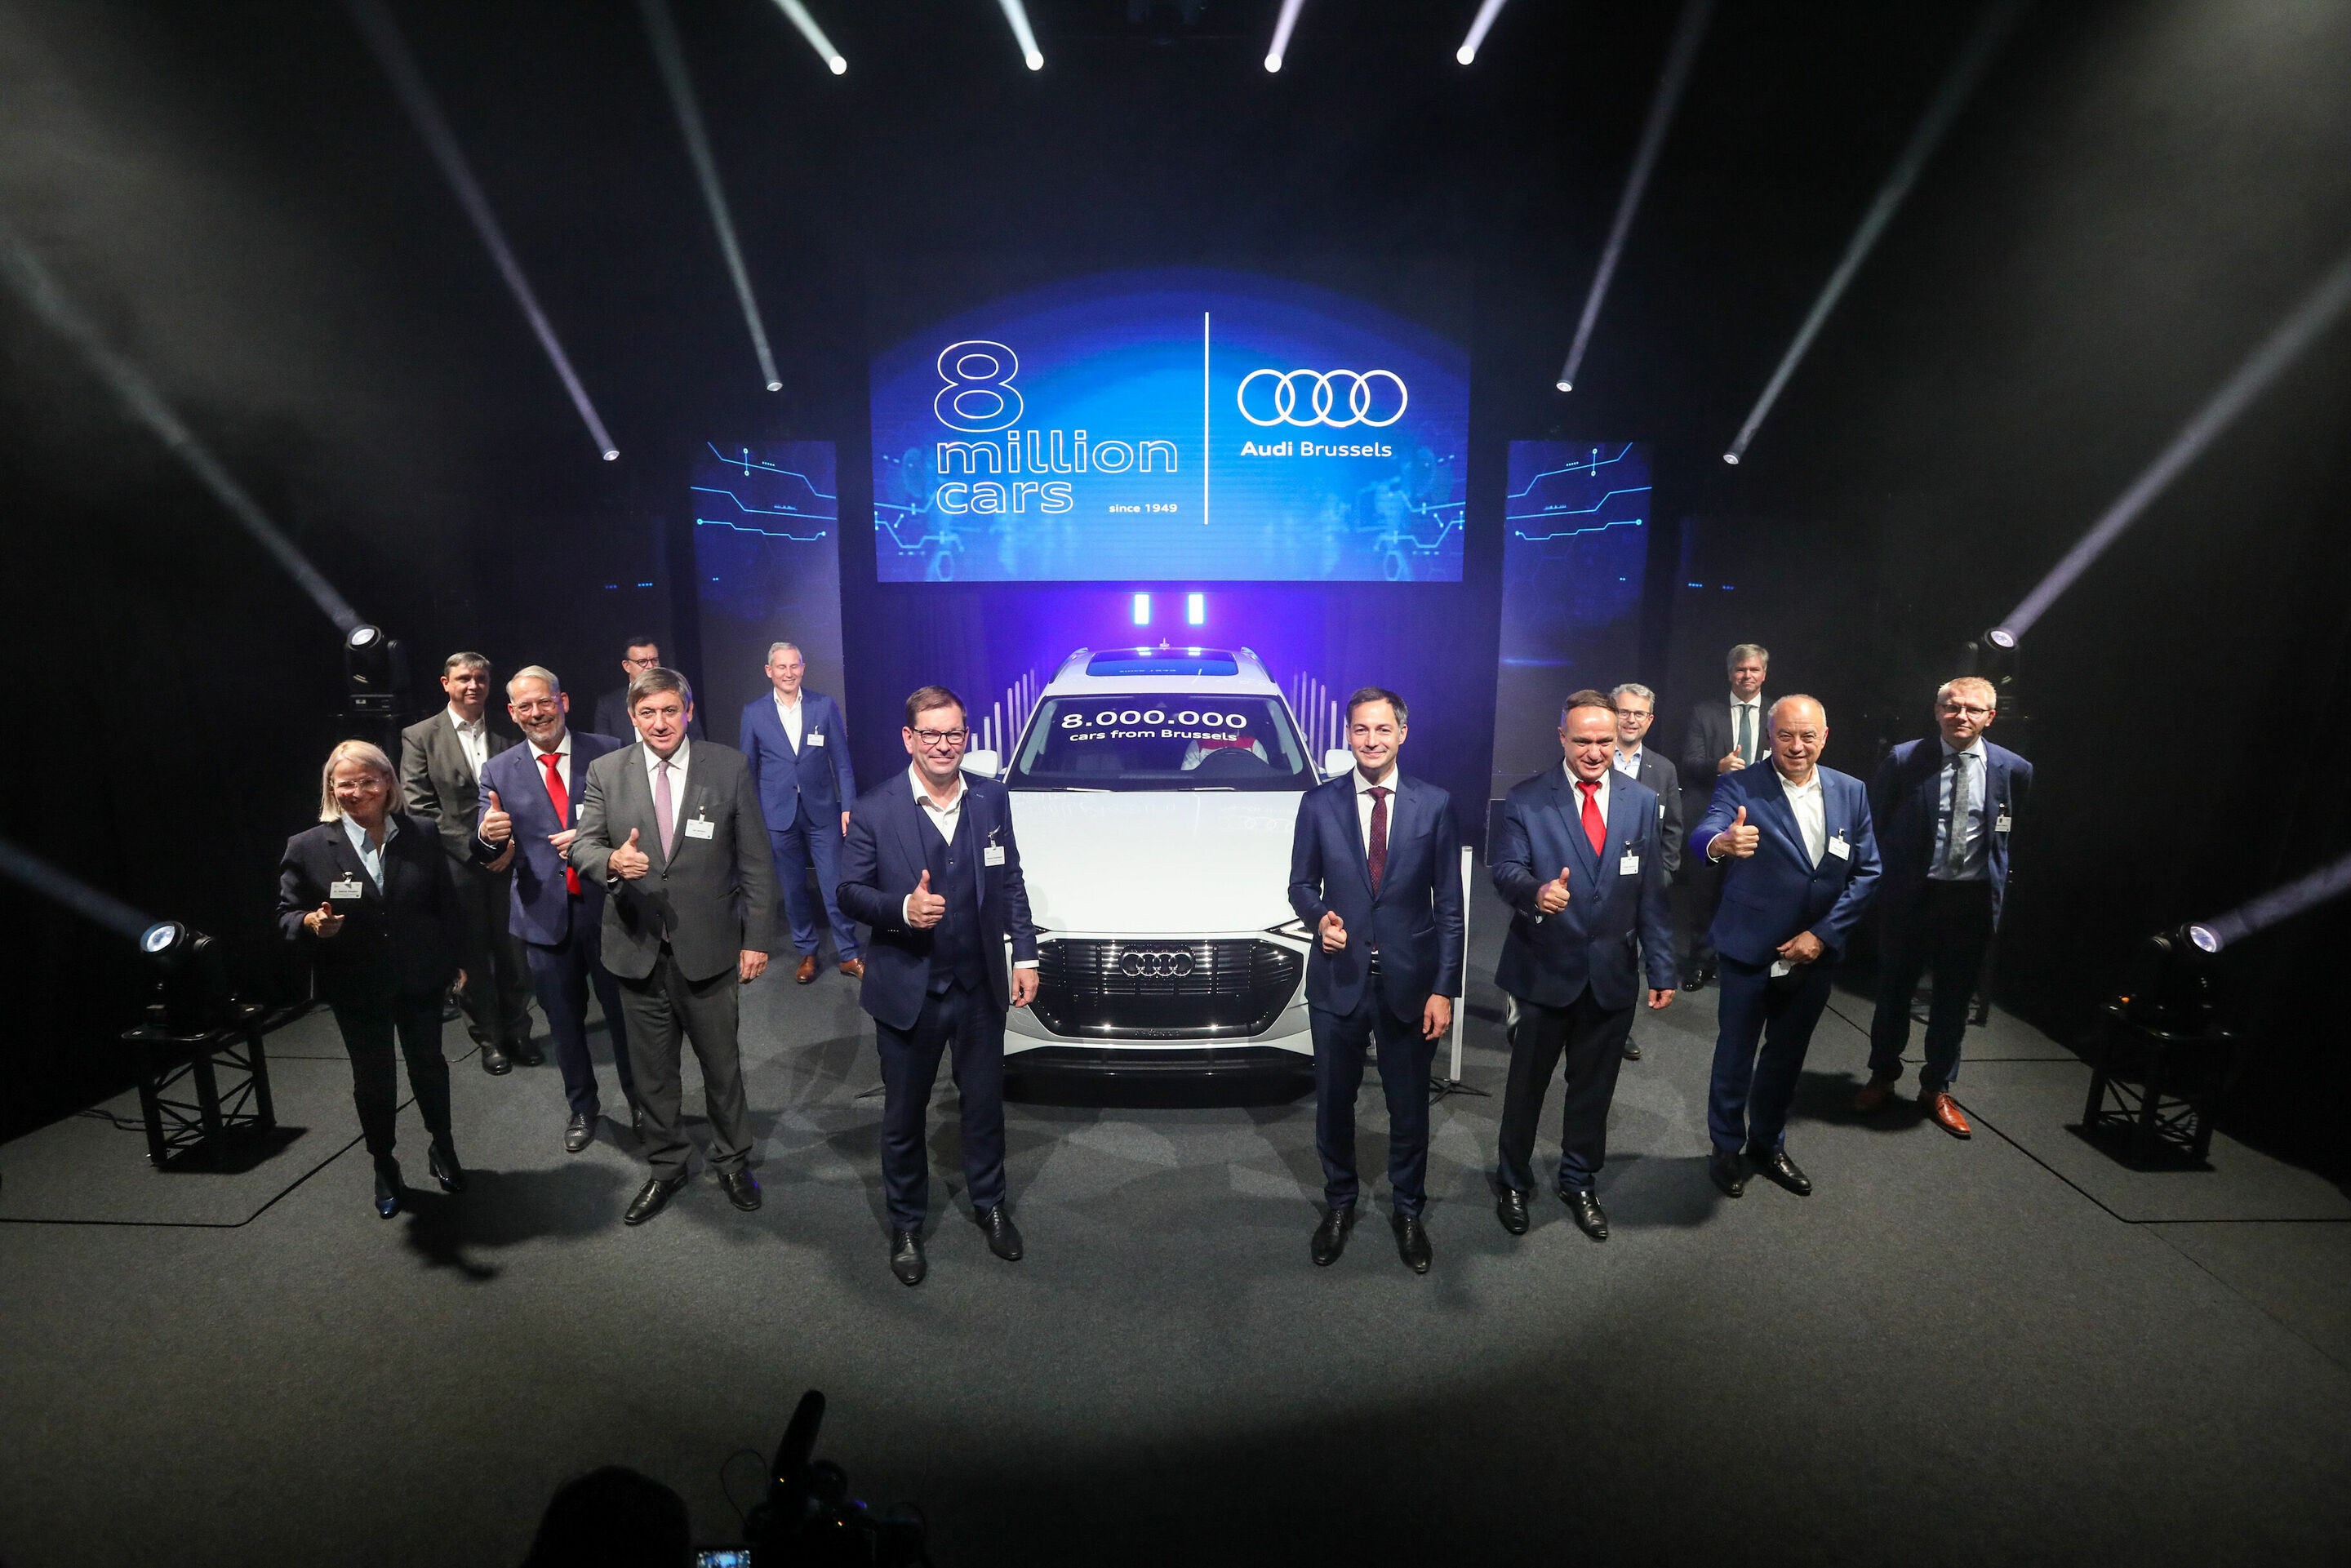 Pionier für E-Mobilität und Nachhaltigkeit: Audi Brussels produziert das achtmillionste Fahrzeug.